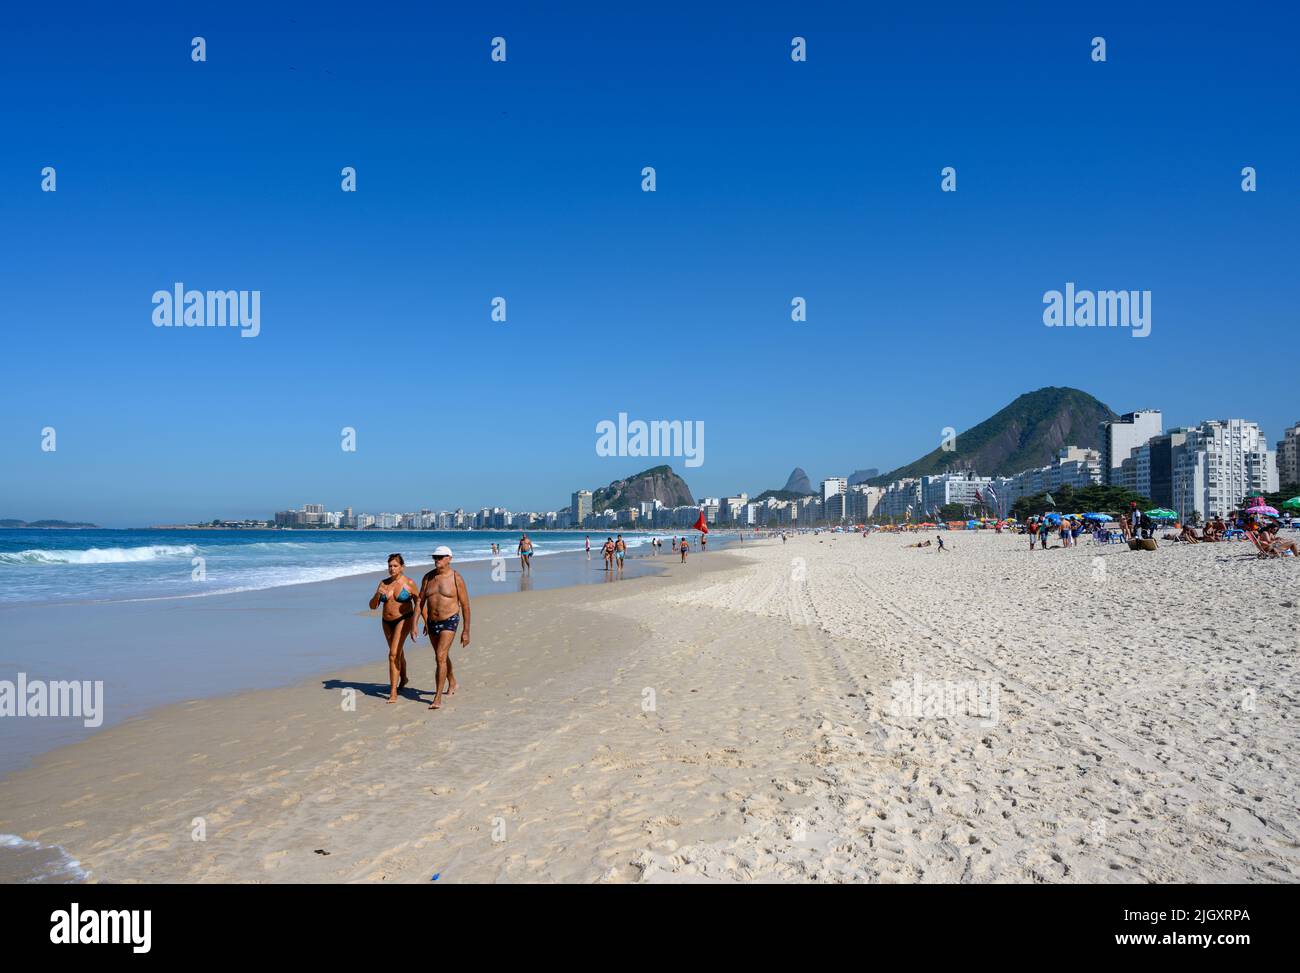 Copacabana Beach, Copacabana, Rio de Janeiro, Brazil Stock Photo